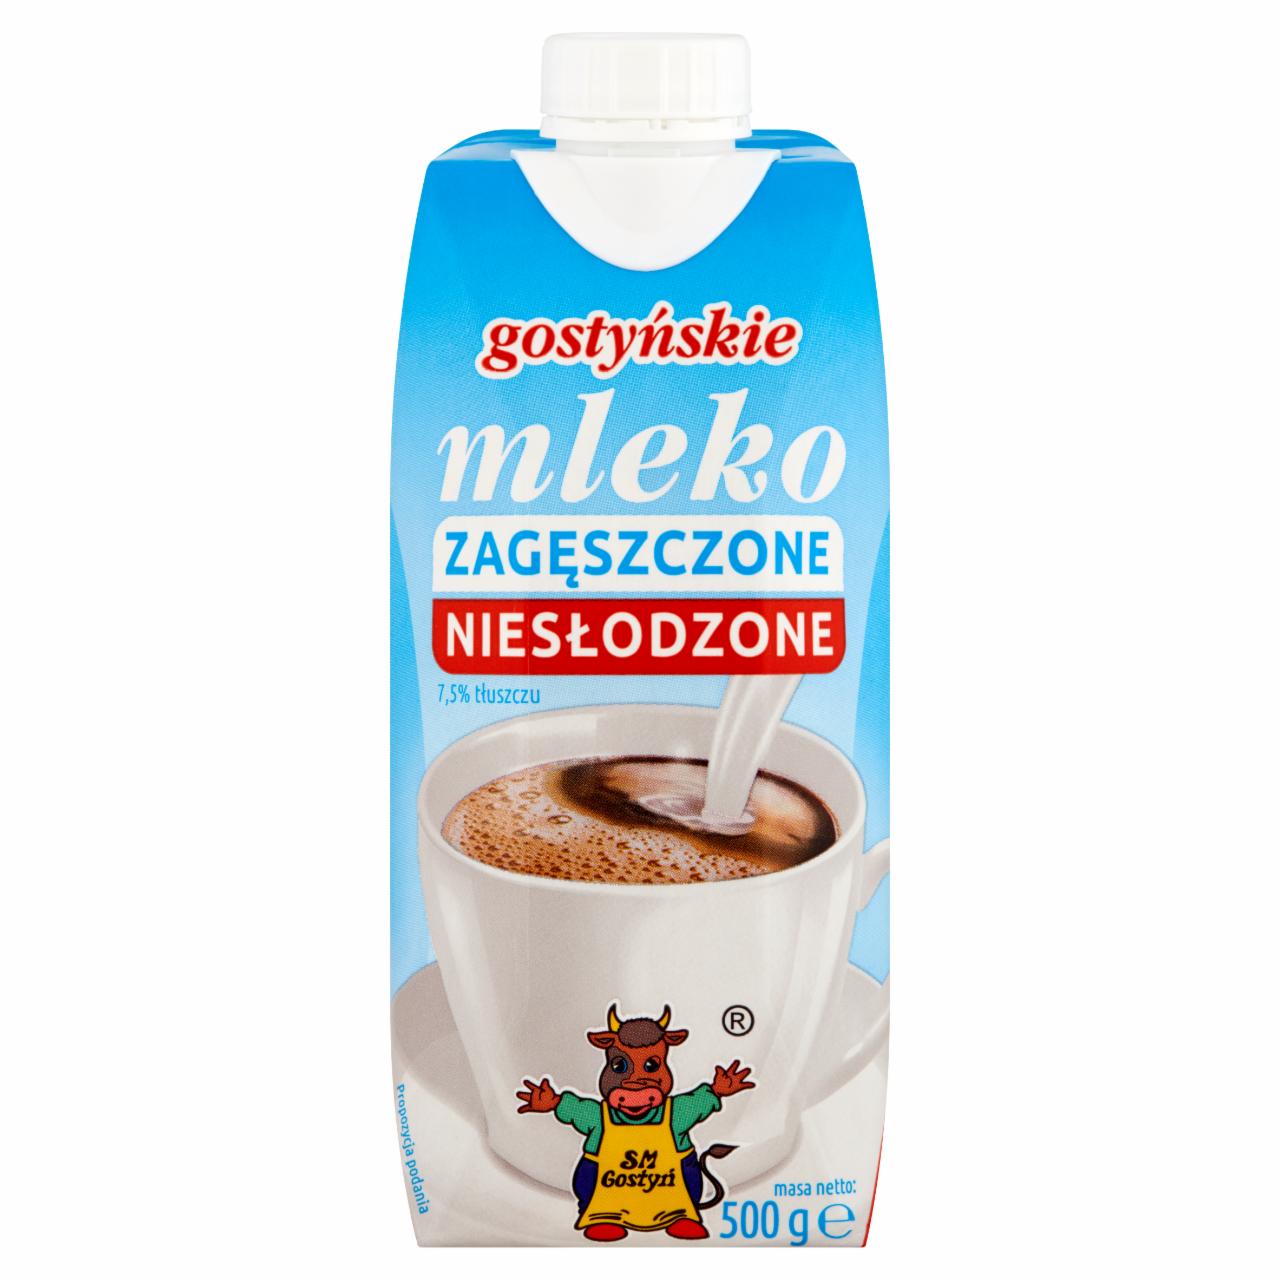 Zdjęcia - SM Gostyń Gostyńskie mleko zagęszczone niesłodzone 7,5% 500 g